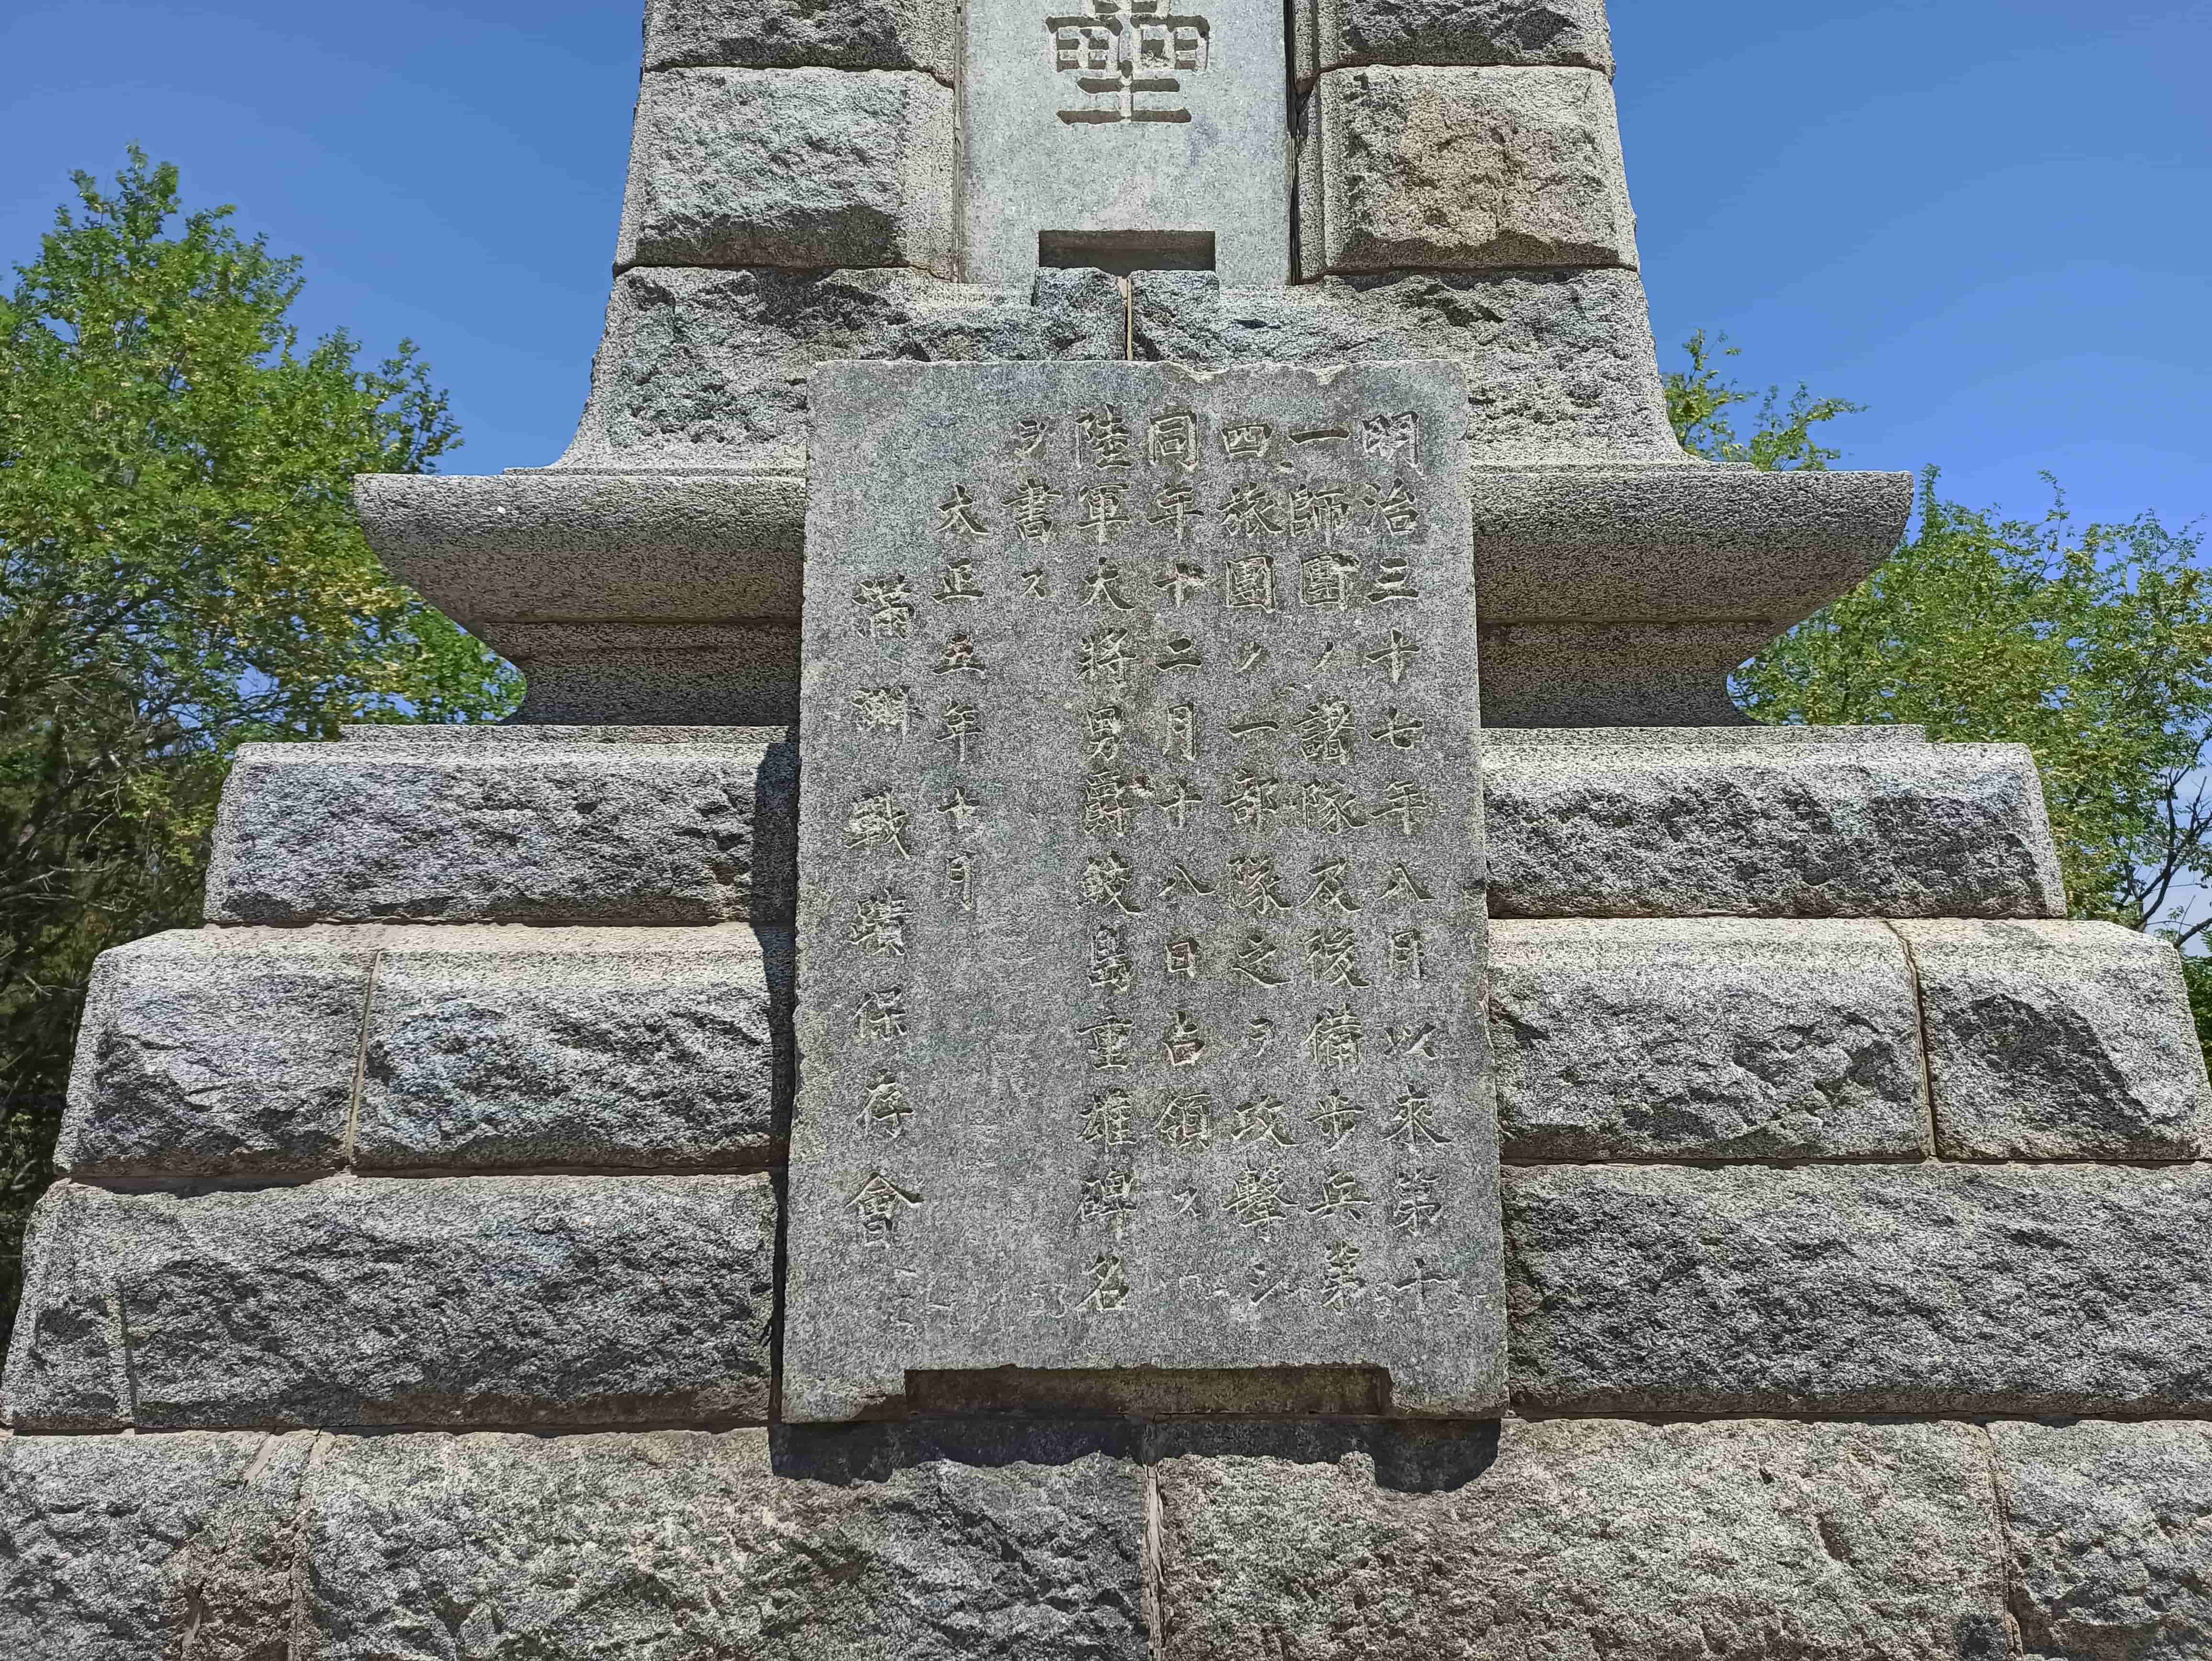 東雞冠山 - 石碑上小日本書寫的碑文